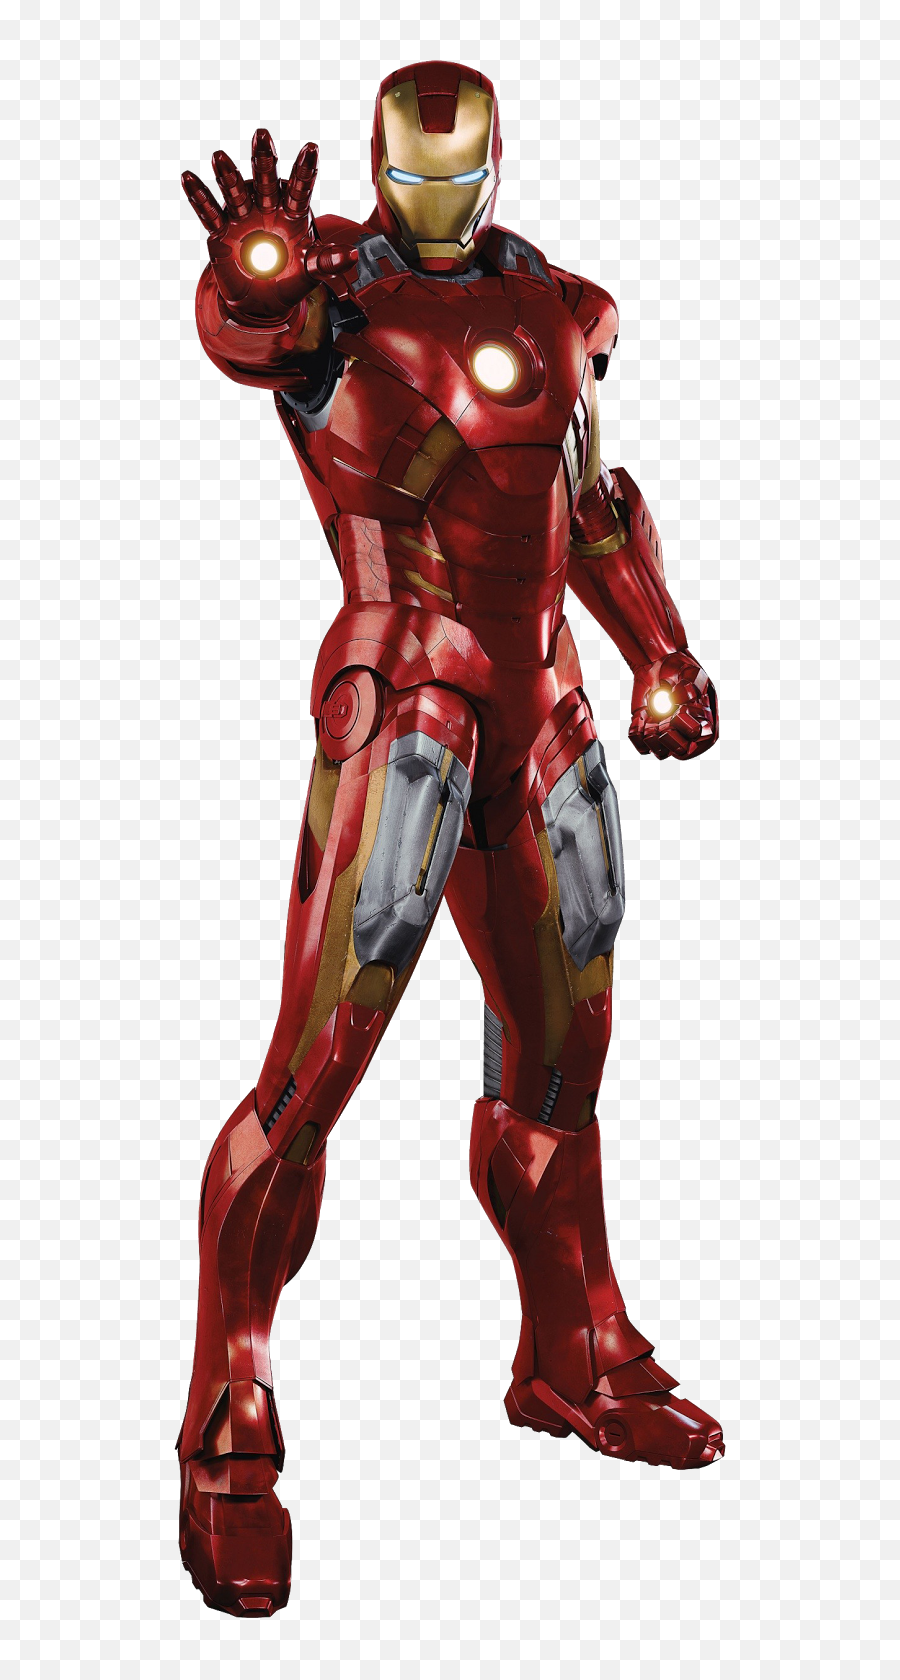 Iron Man Transparent Png Clipart Free - Iron Man Avengers Suit,Iron Man Transparent